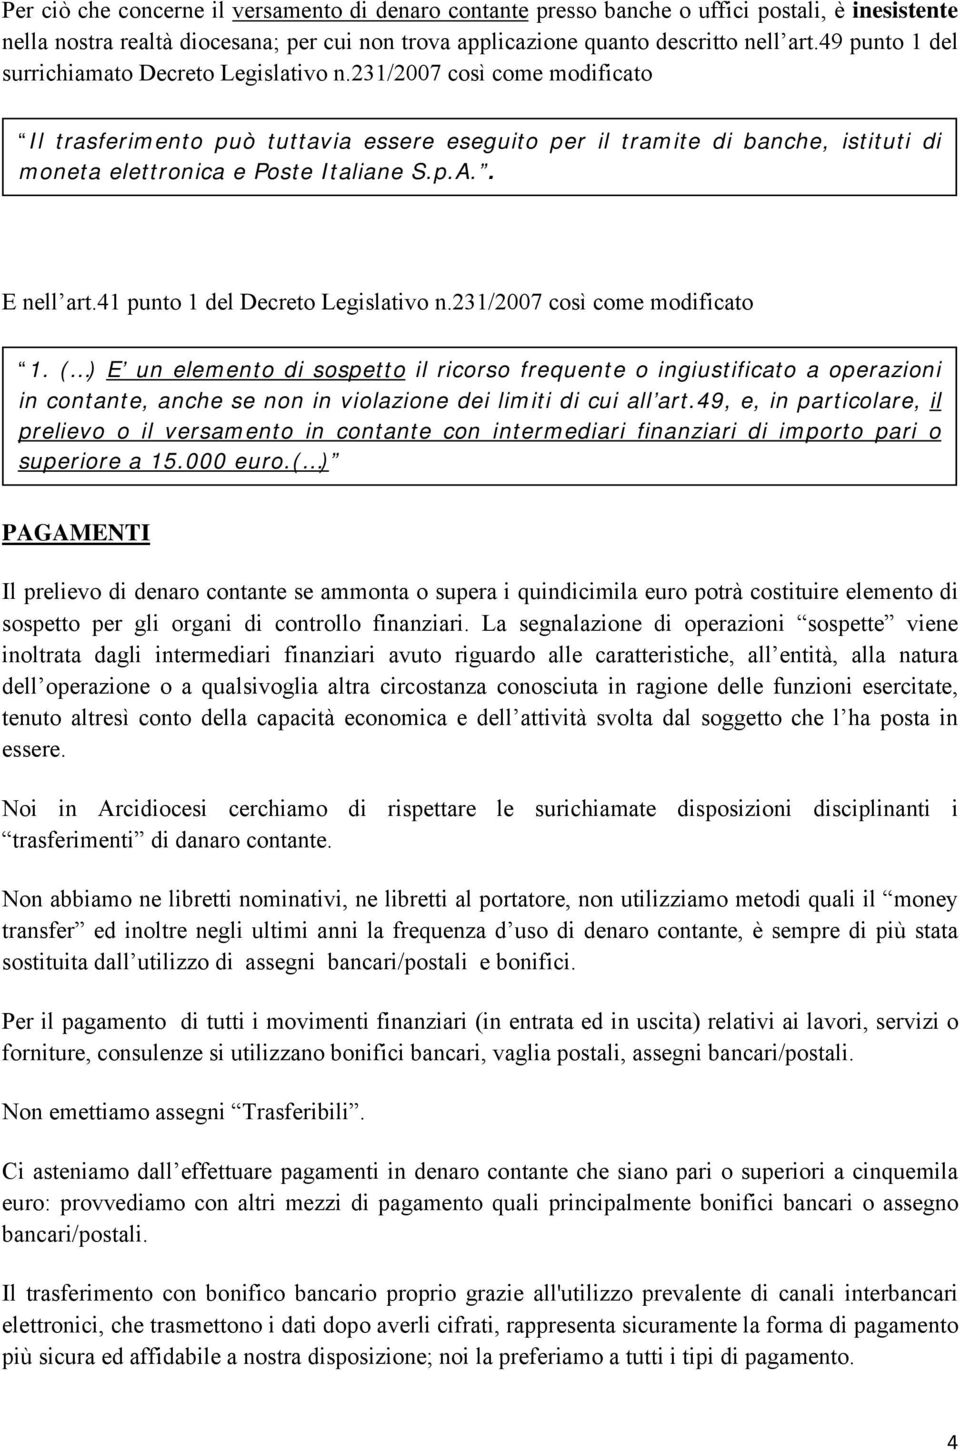 231/2007 così come modificato Il trasferimento può tuttavia essere eseguito per il tramite di banche, istituti di moneta elettronica e Poste Italiane S.p.A.. E nell art.